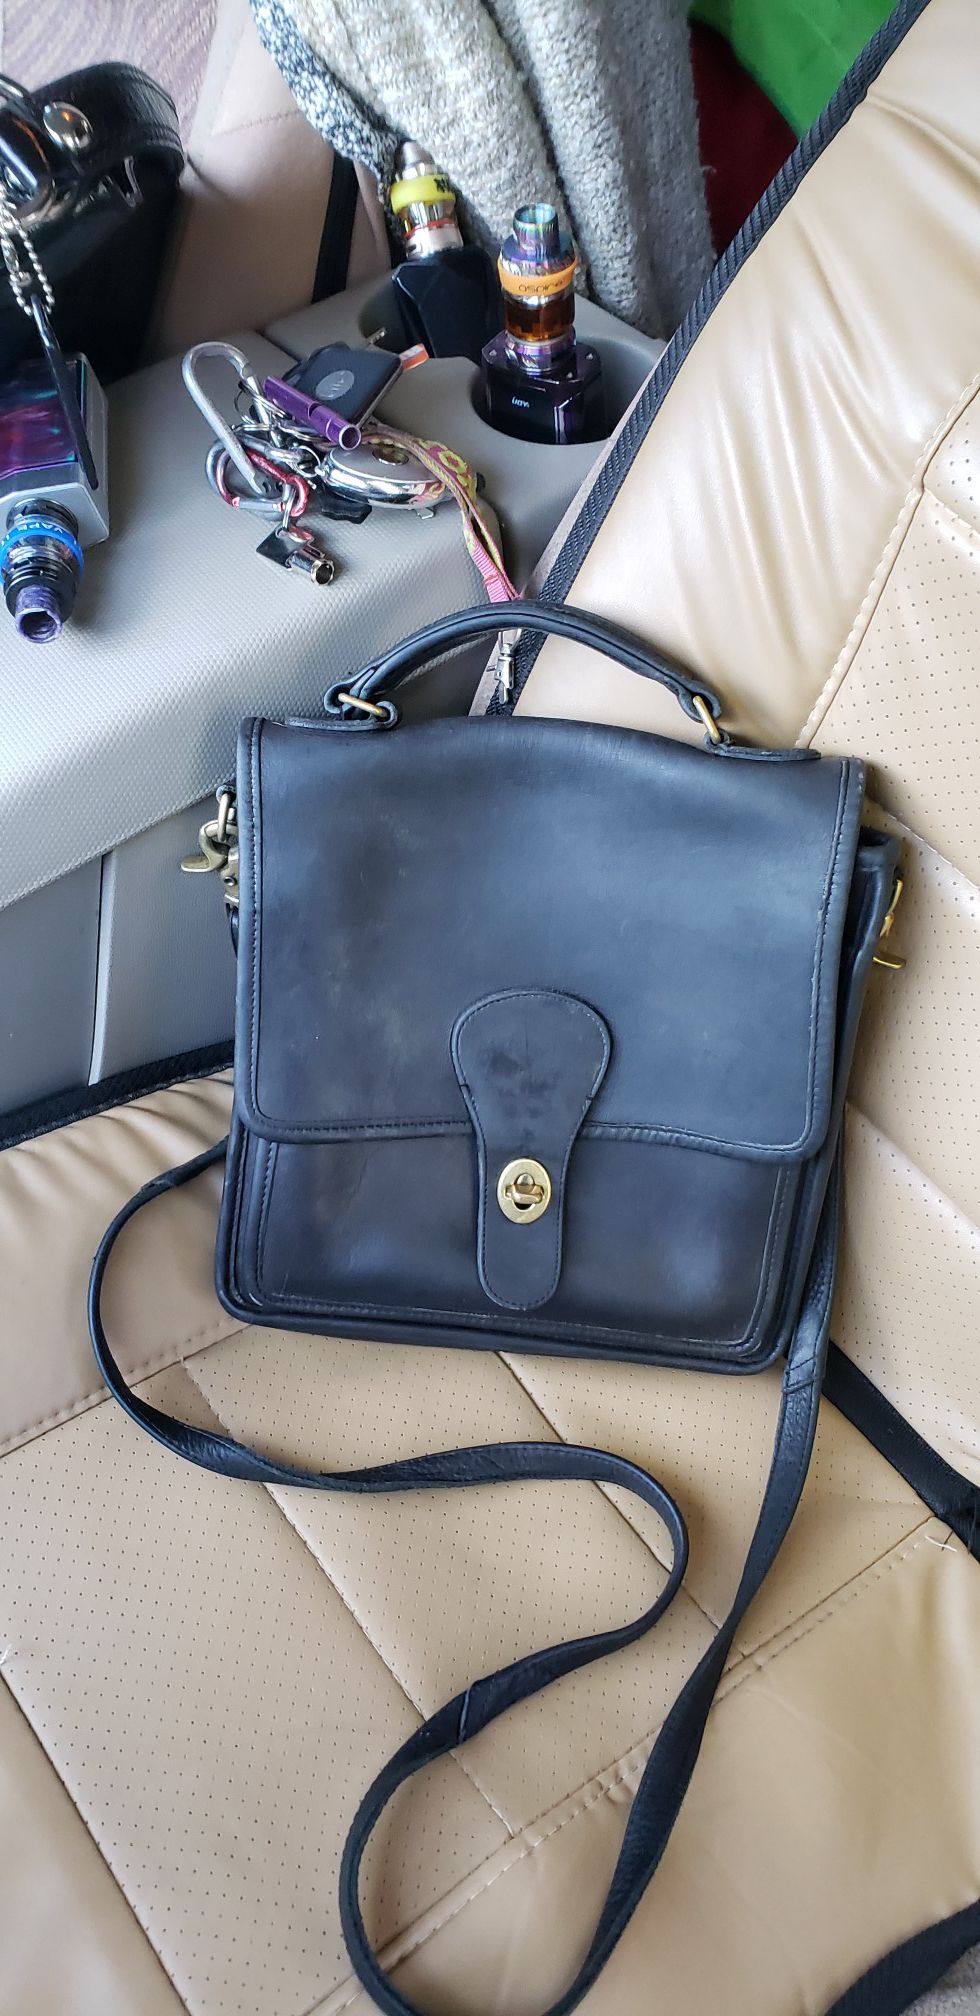 Vintage coach purse